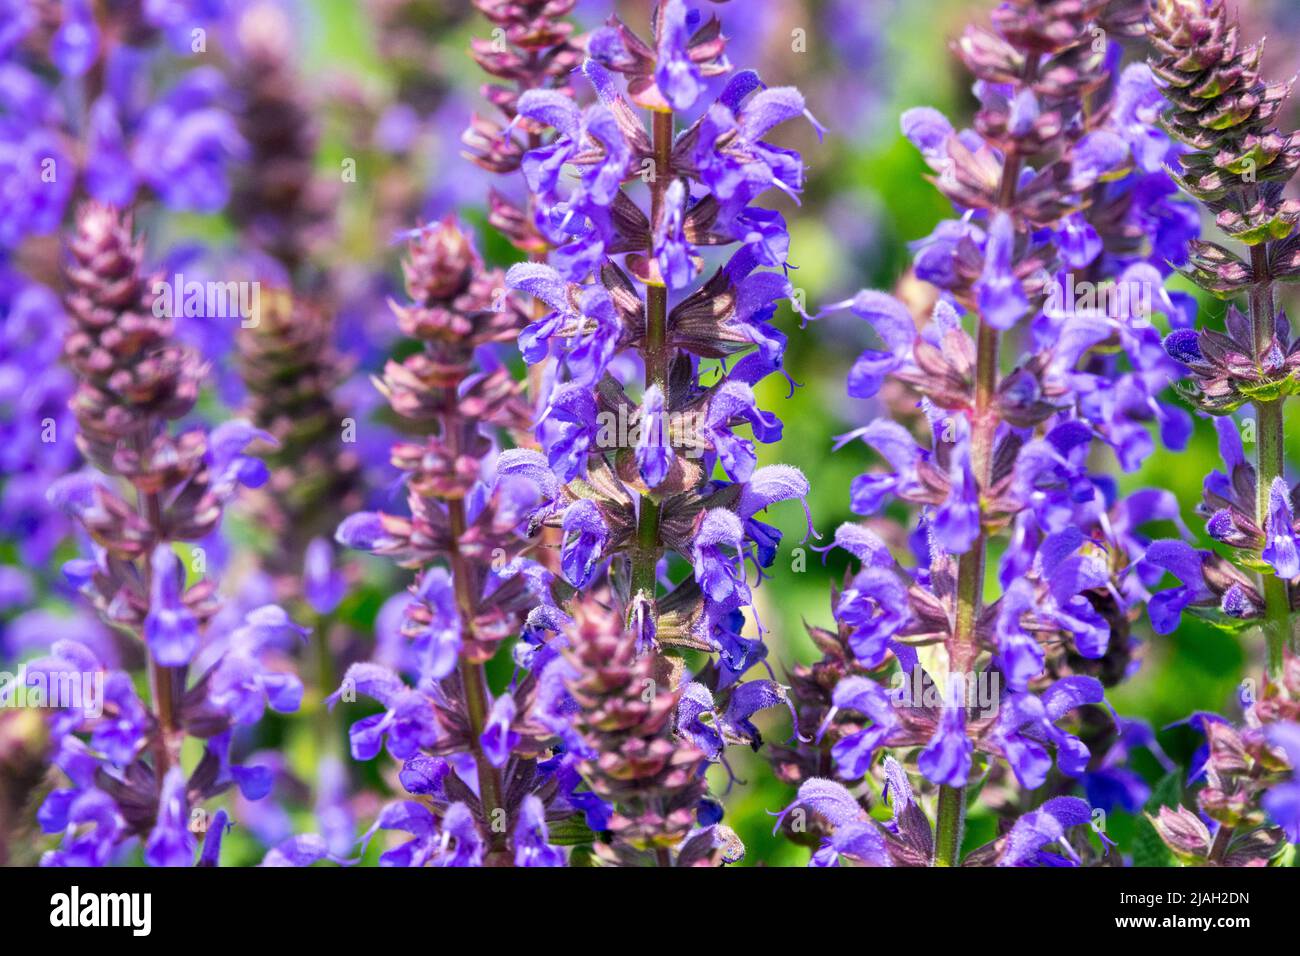 Salvia nemorosa, Salvia superba, Meadow Sage, Salvia 'Aprilnacht', wunderschön, Blau, Blüten aus nächster Nähe Stockfoto